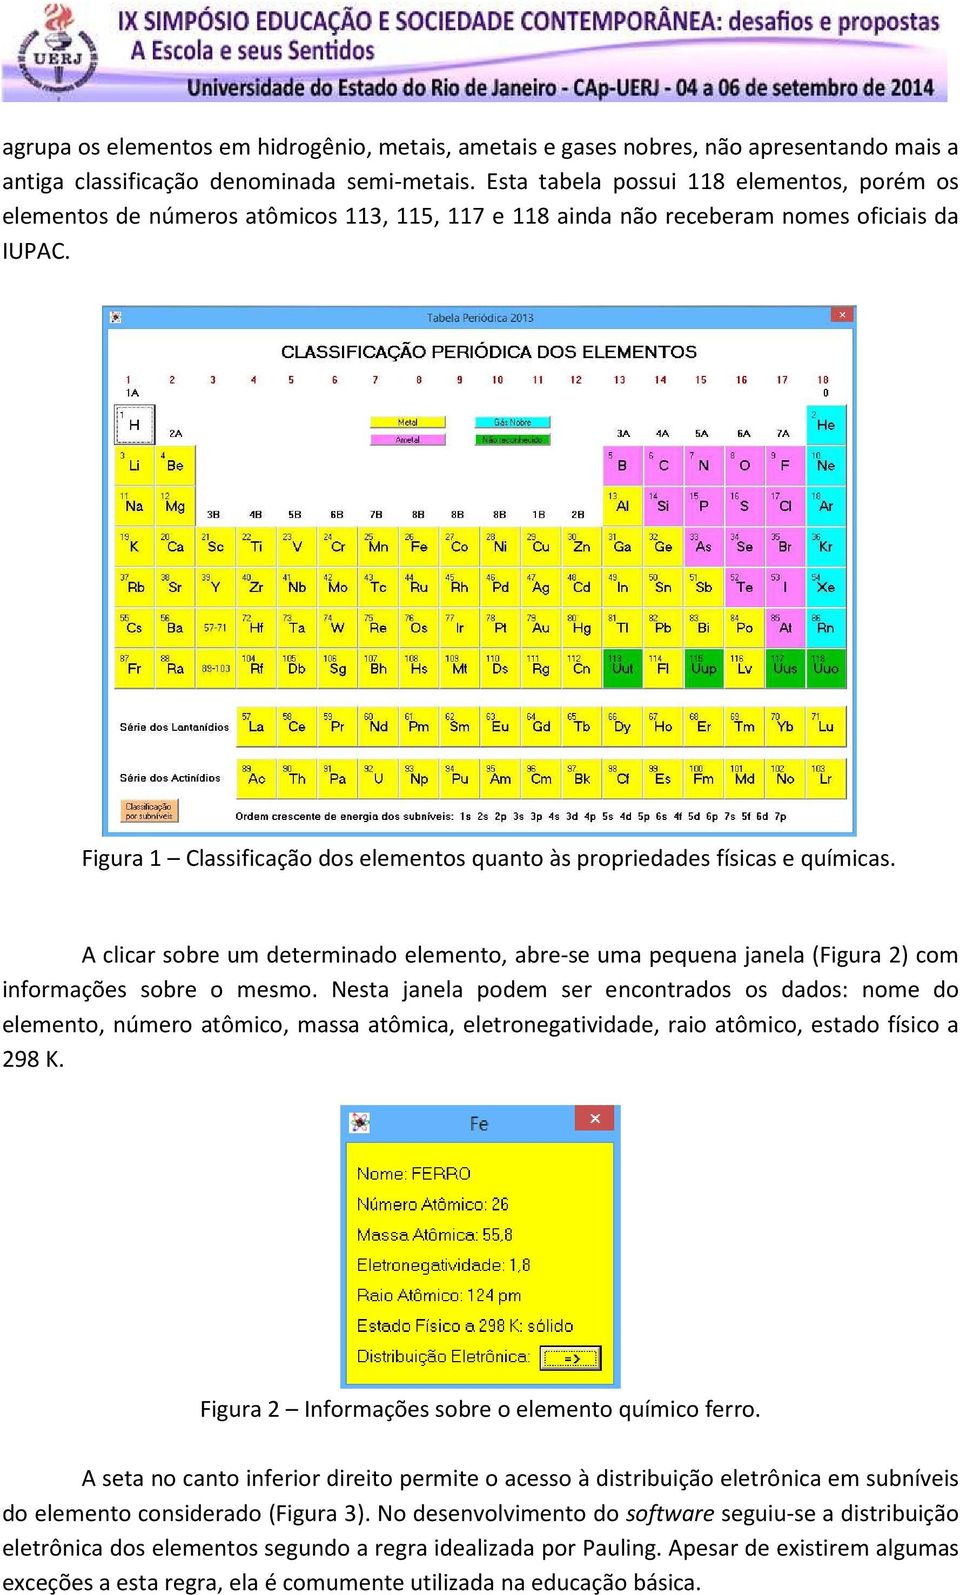 Figura 1 Classificação dos elementos quanto às propriedades físicas e químicas. A clicar sobre um determinado elemento, abre-se uma pequena janela (Figura 2) com informações sobre o mesmo.